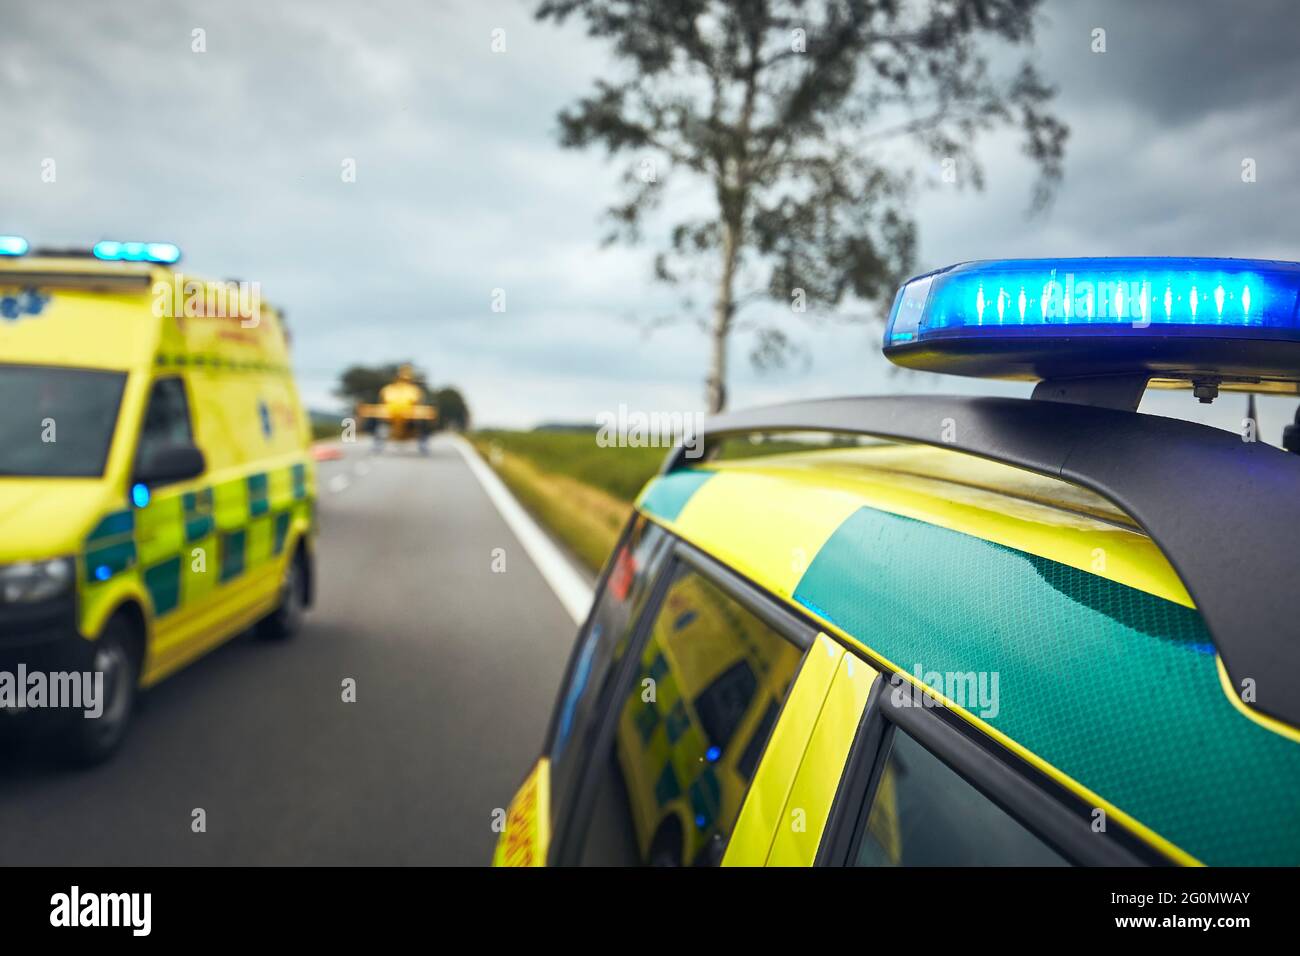 Auto ambulanza contro elicottero su strada. Squadre di emergenza assistenza medica risposta a incidente stradale. Foto Stock